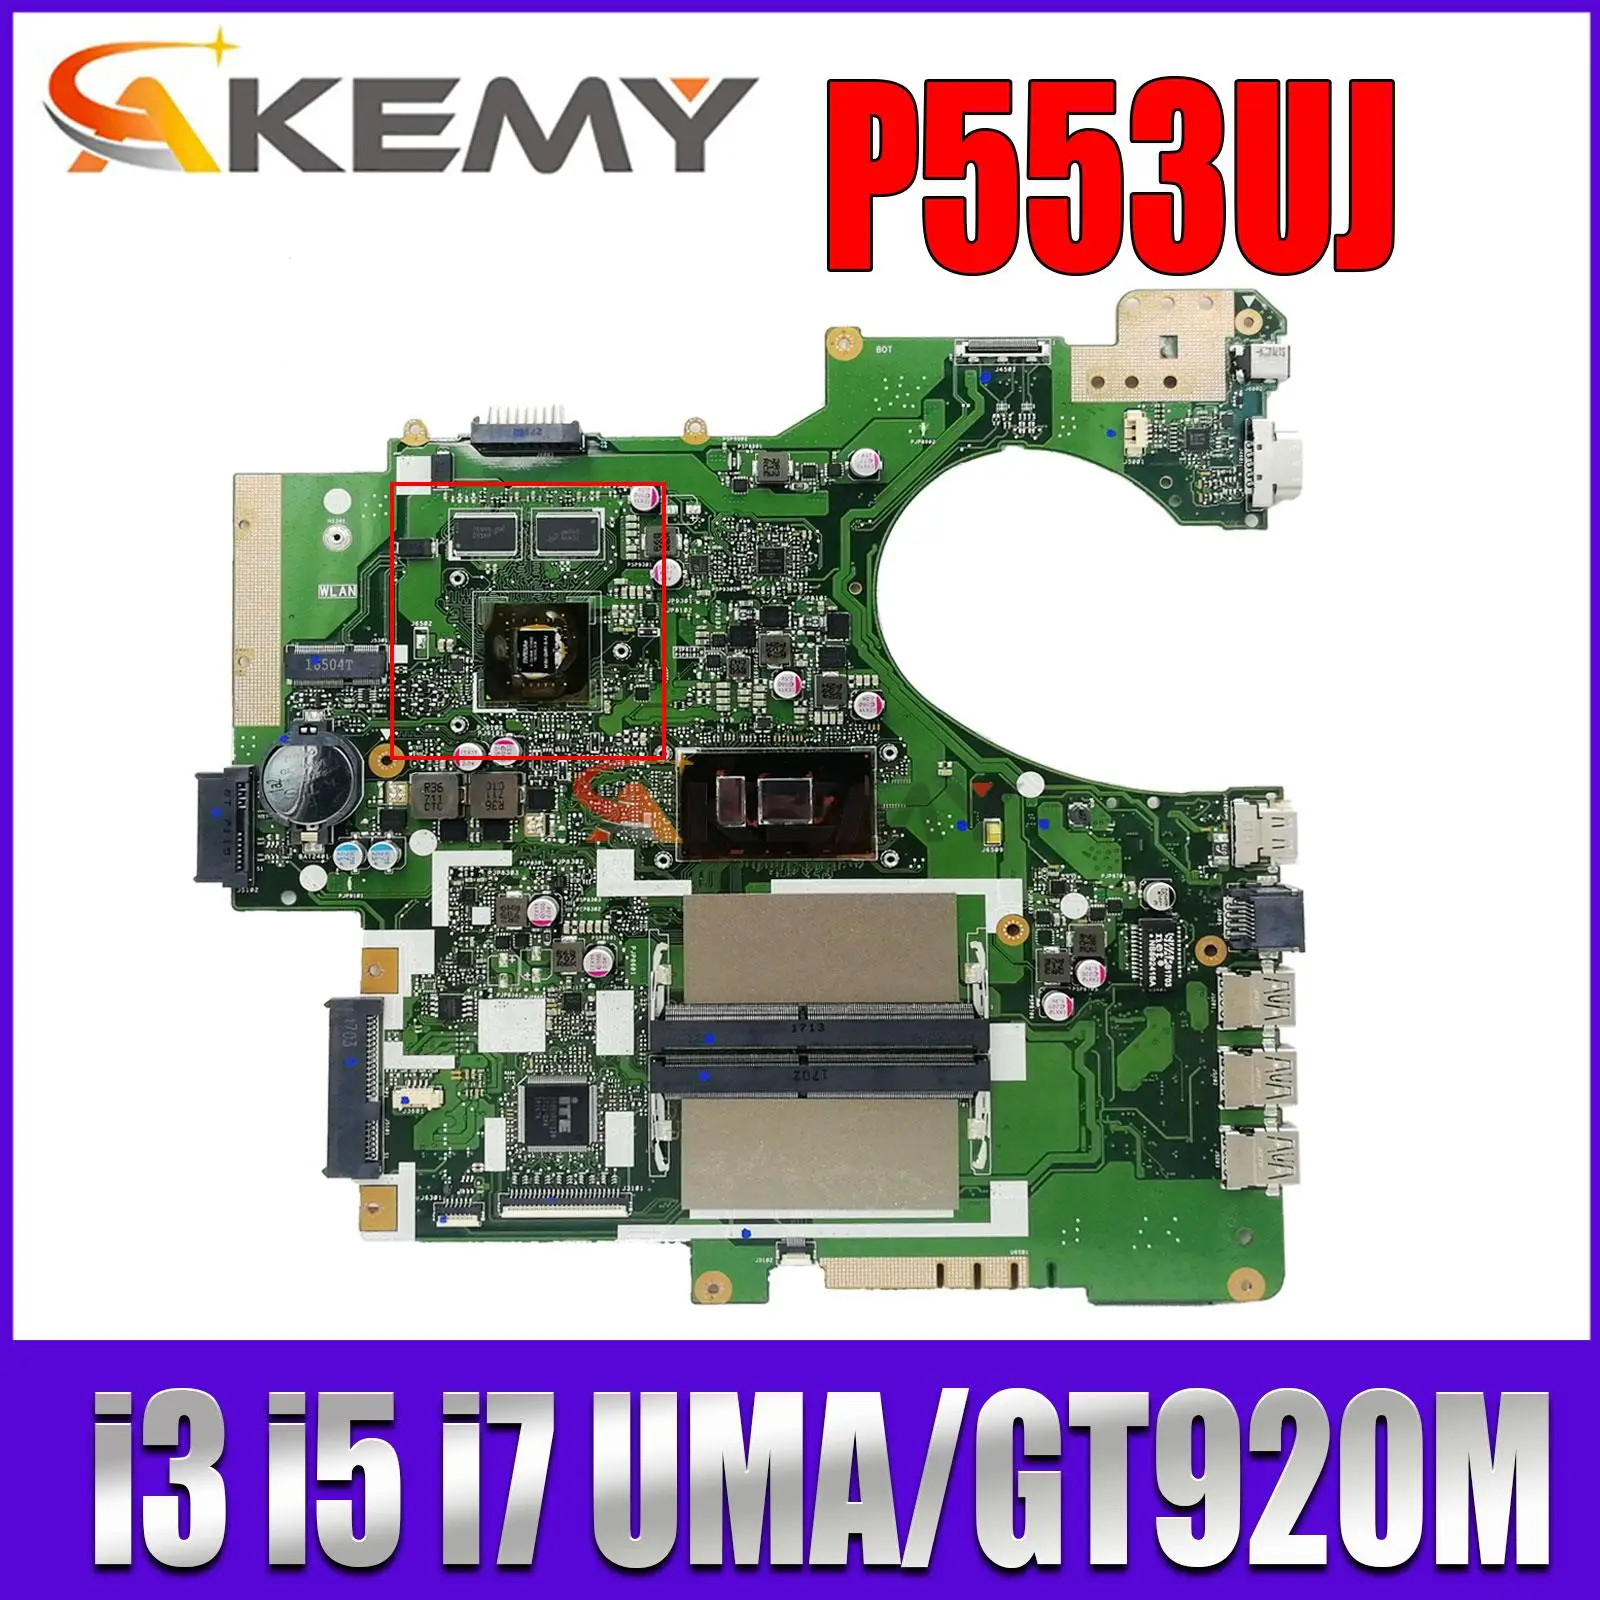 

Mainboard P2540UJ P2540UA P2530UJ P553UJ P553UA P2540U PRO553U PX553U PE553U P553U Laptop Motherboard I3 I5 I7 UMA OR GT920M